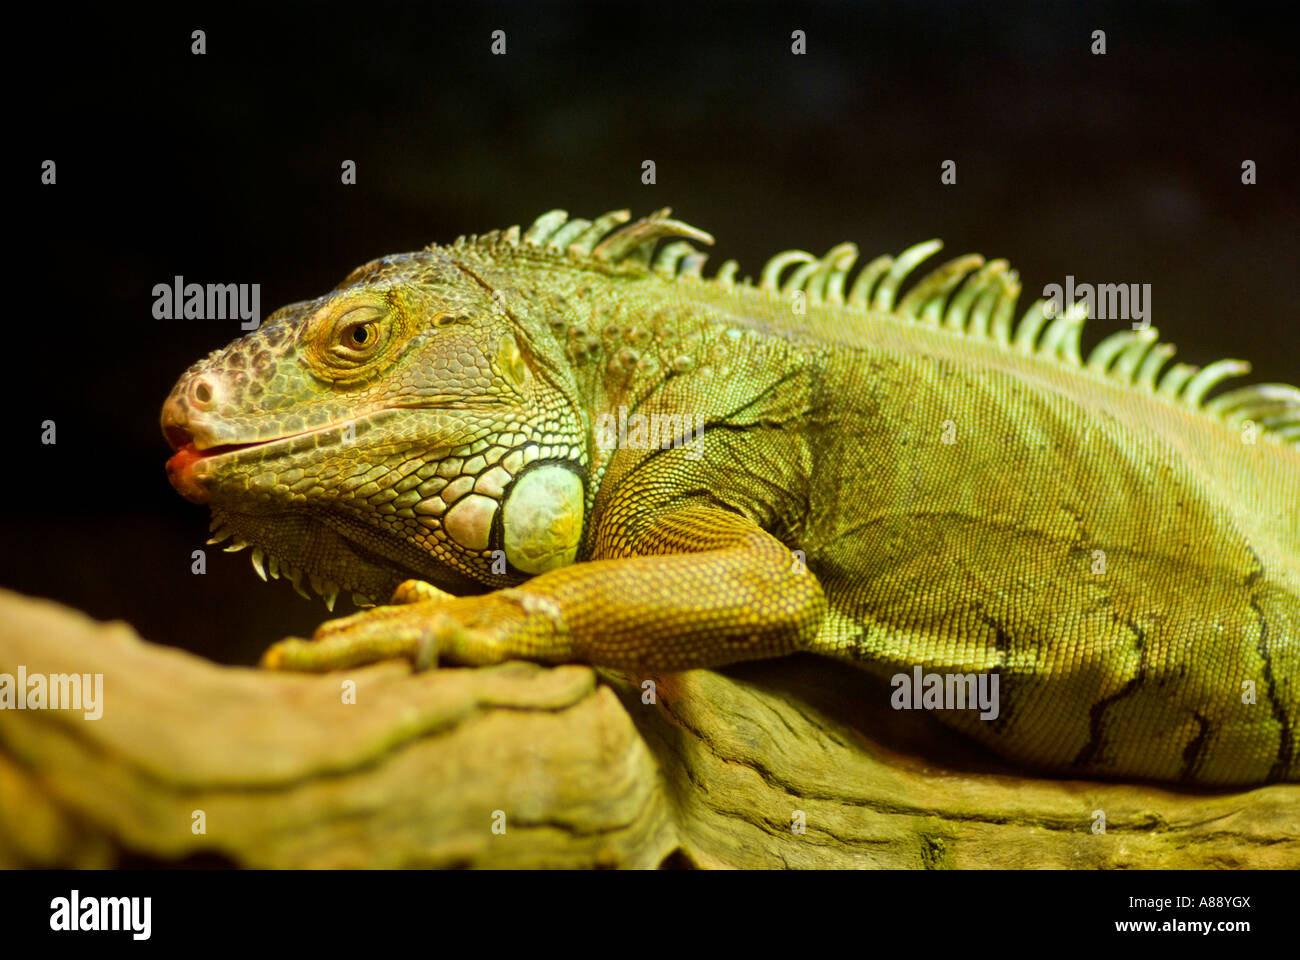 Awesome Iguana with Black Background Stock Photo